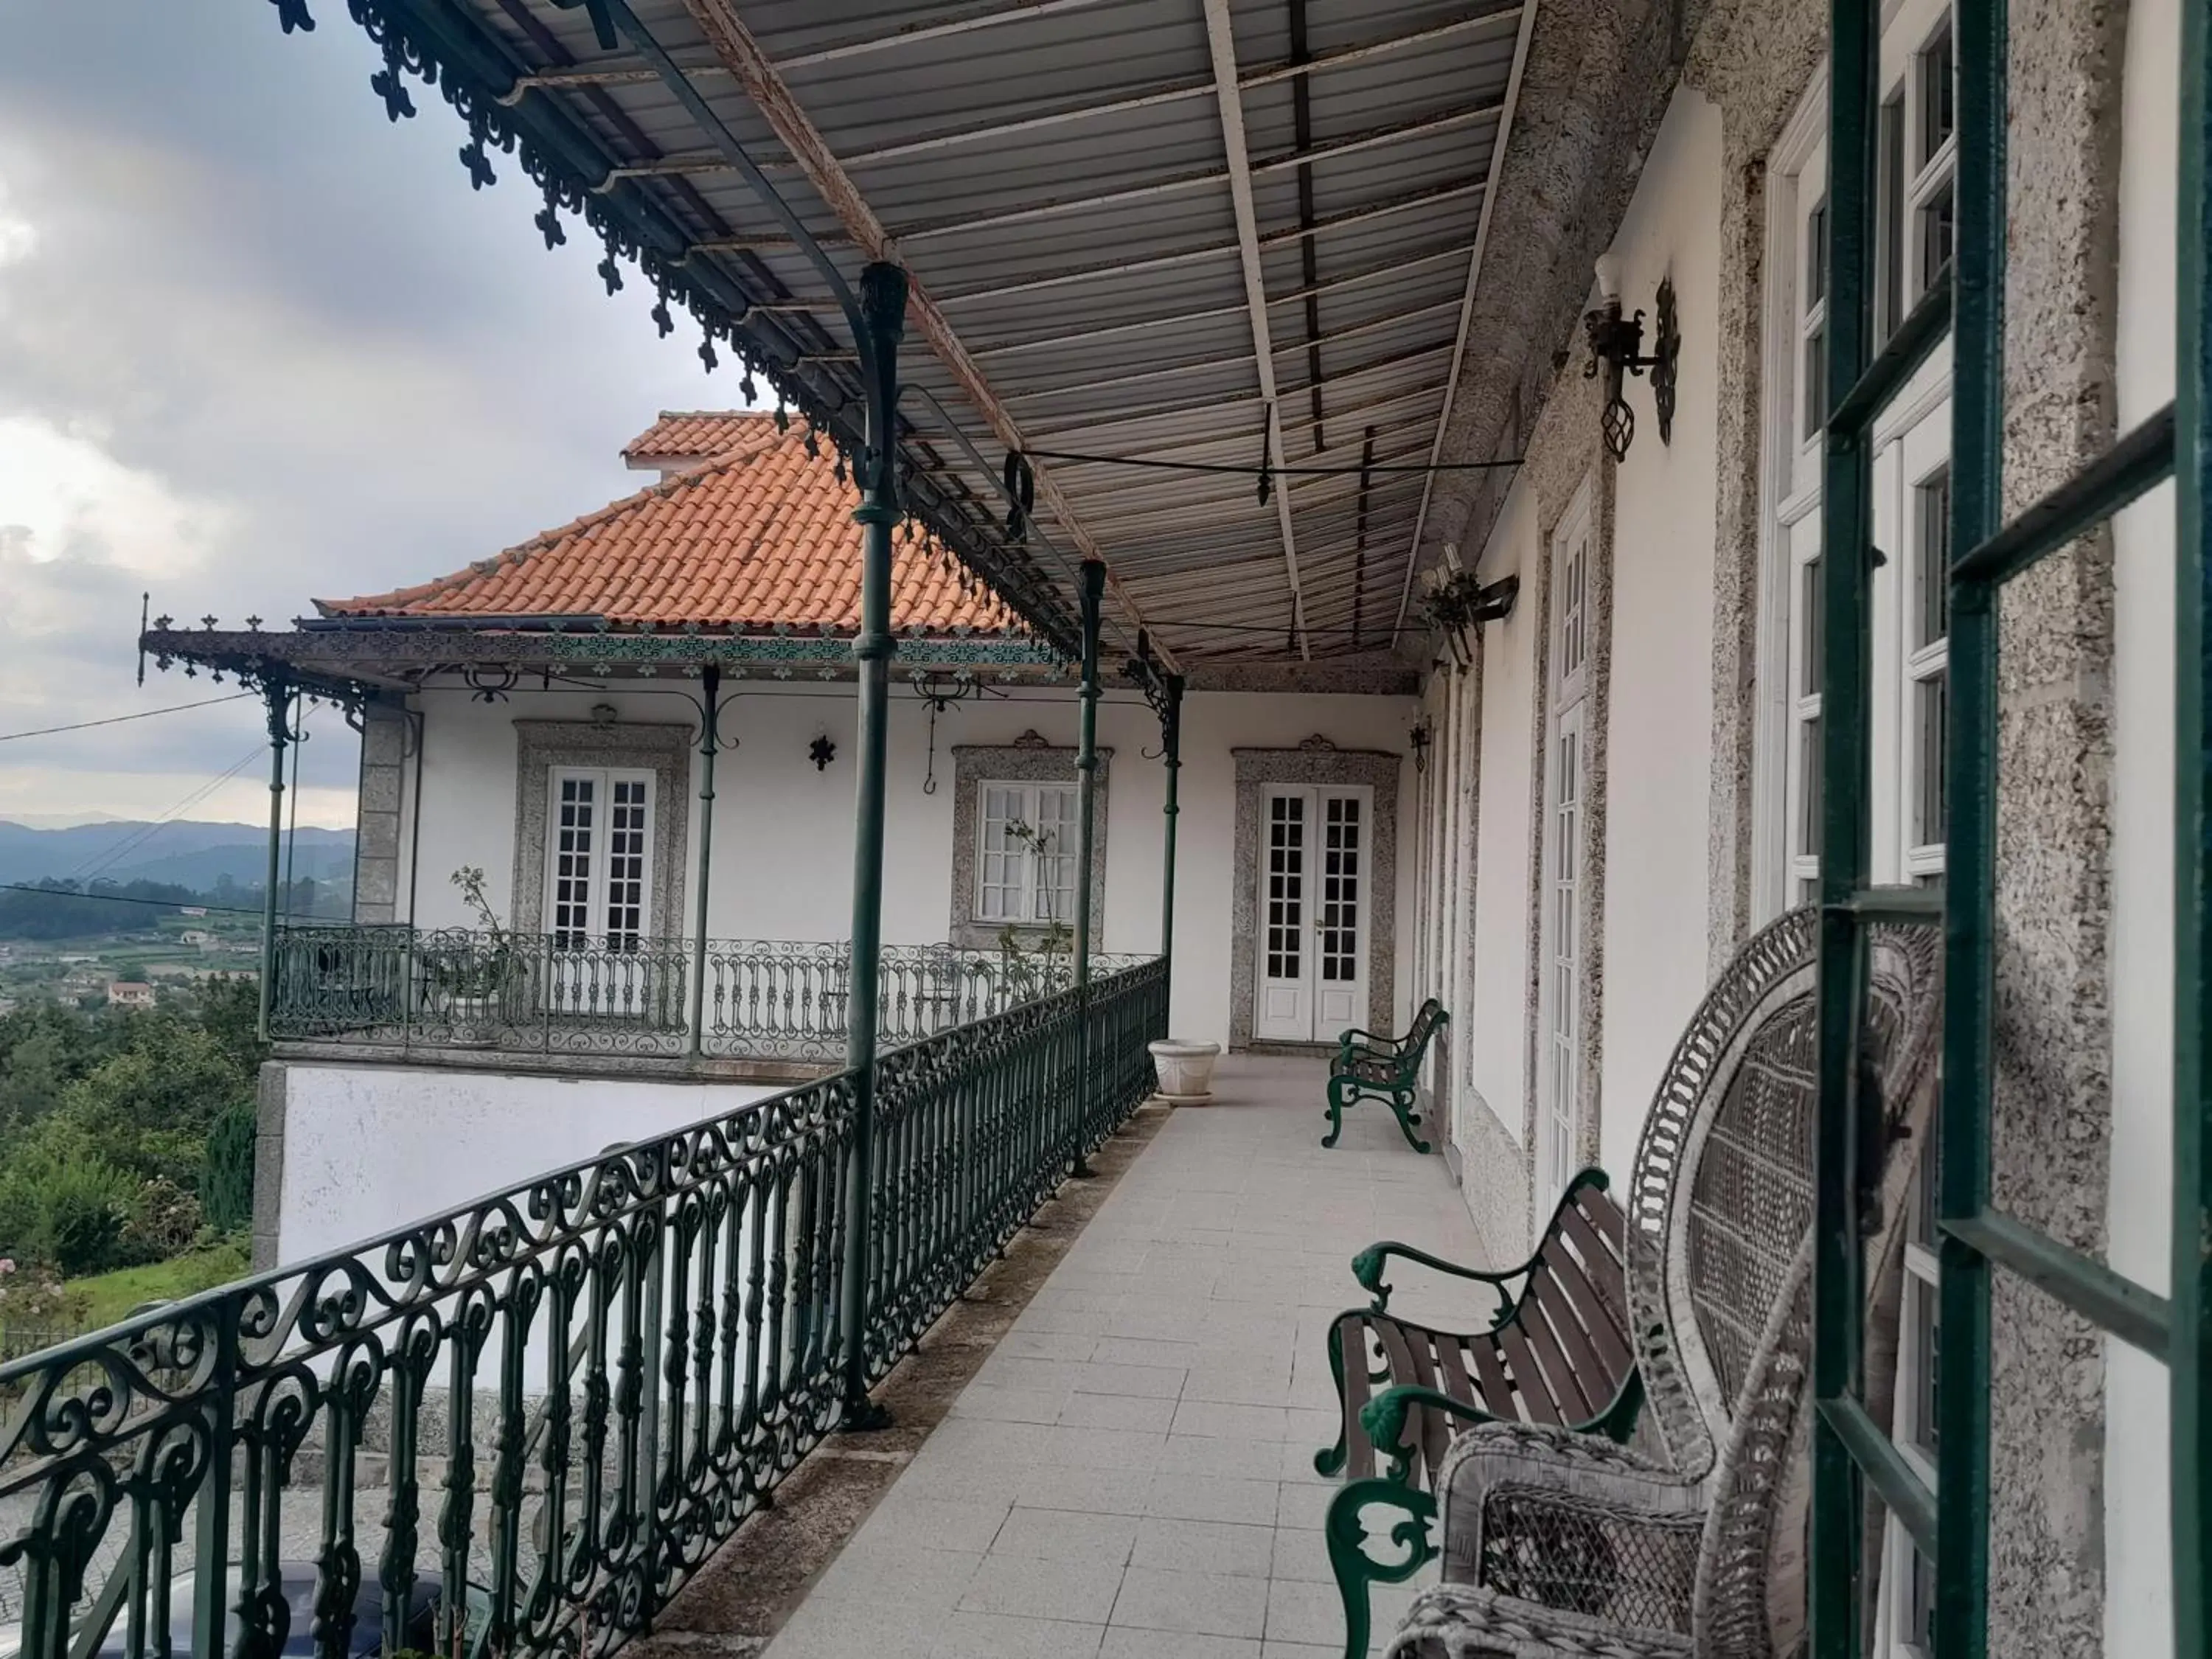 Balcony/Terrace in Casas do sameiro